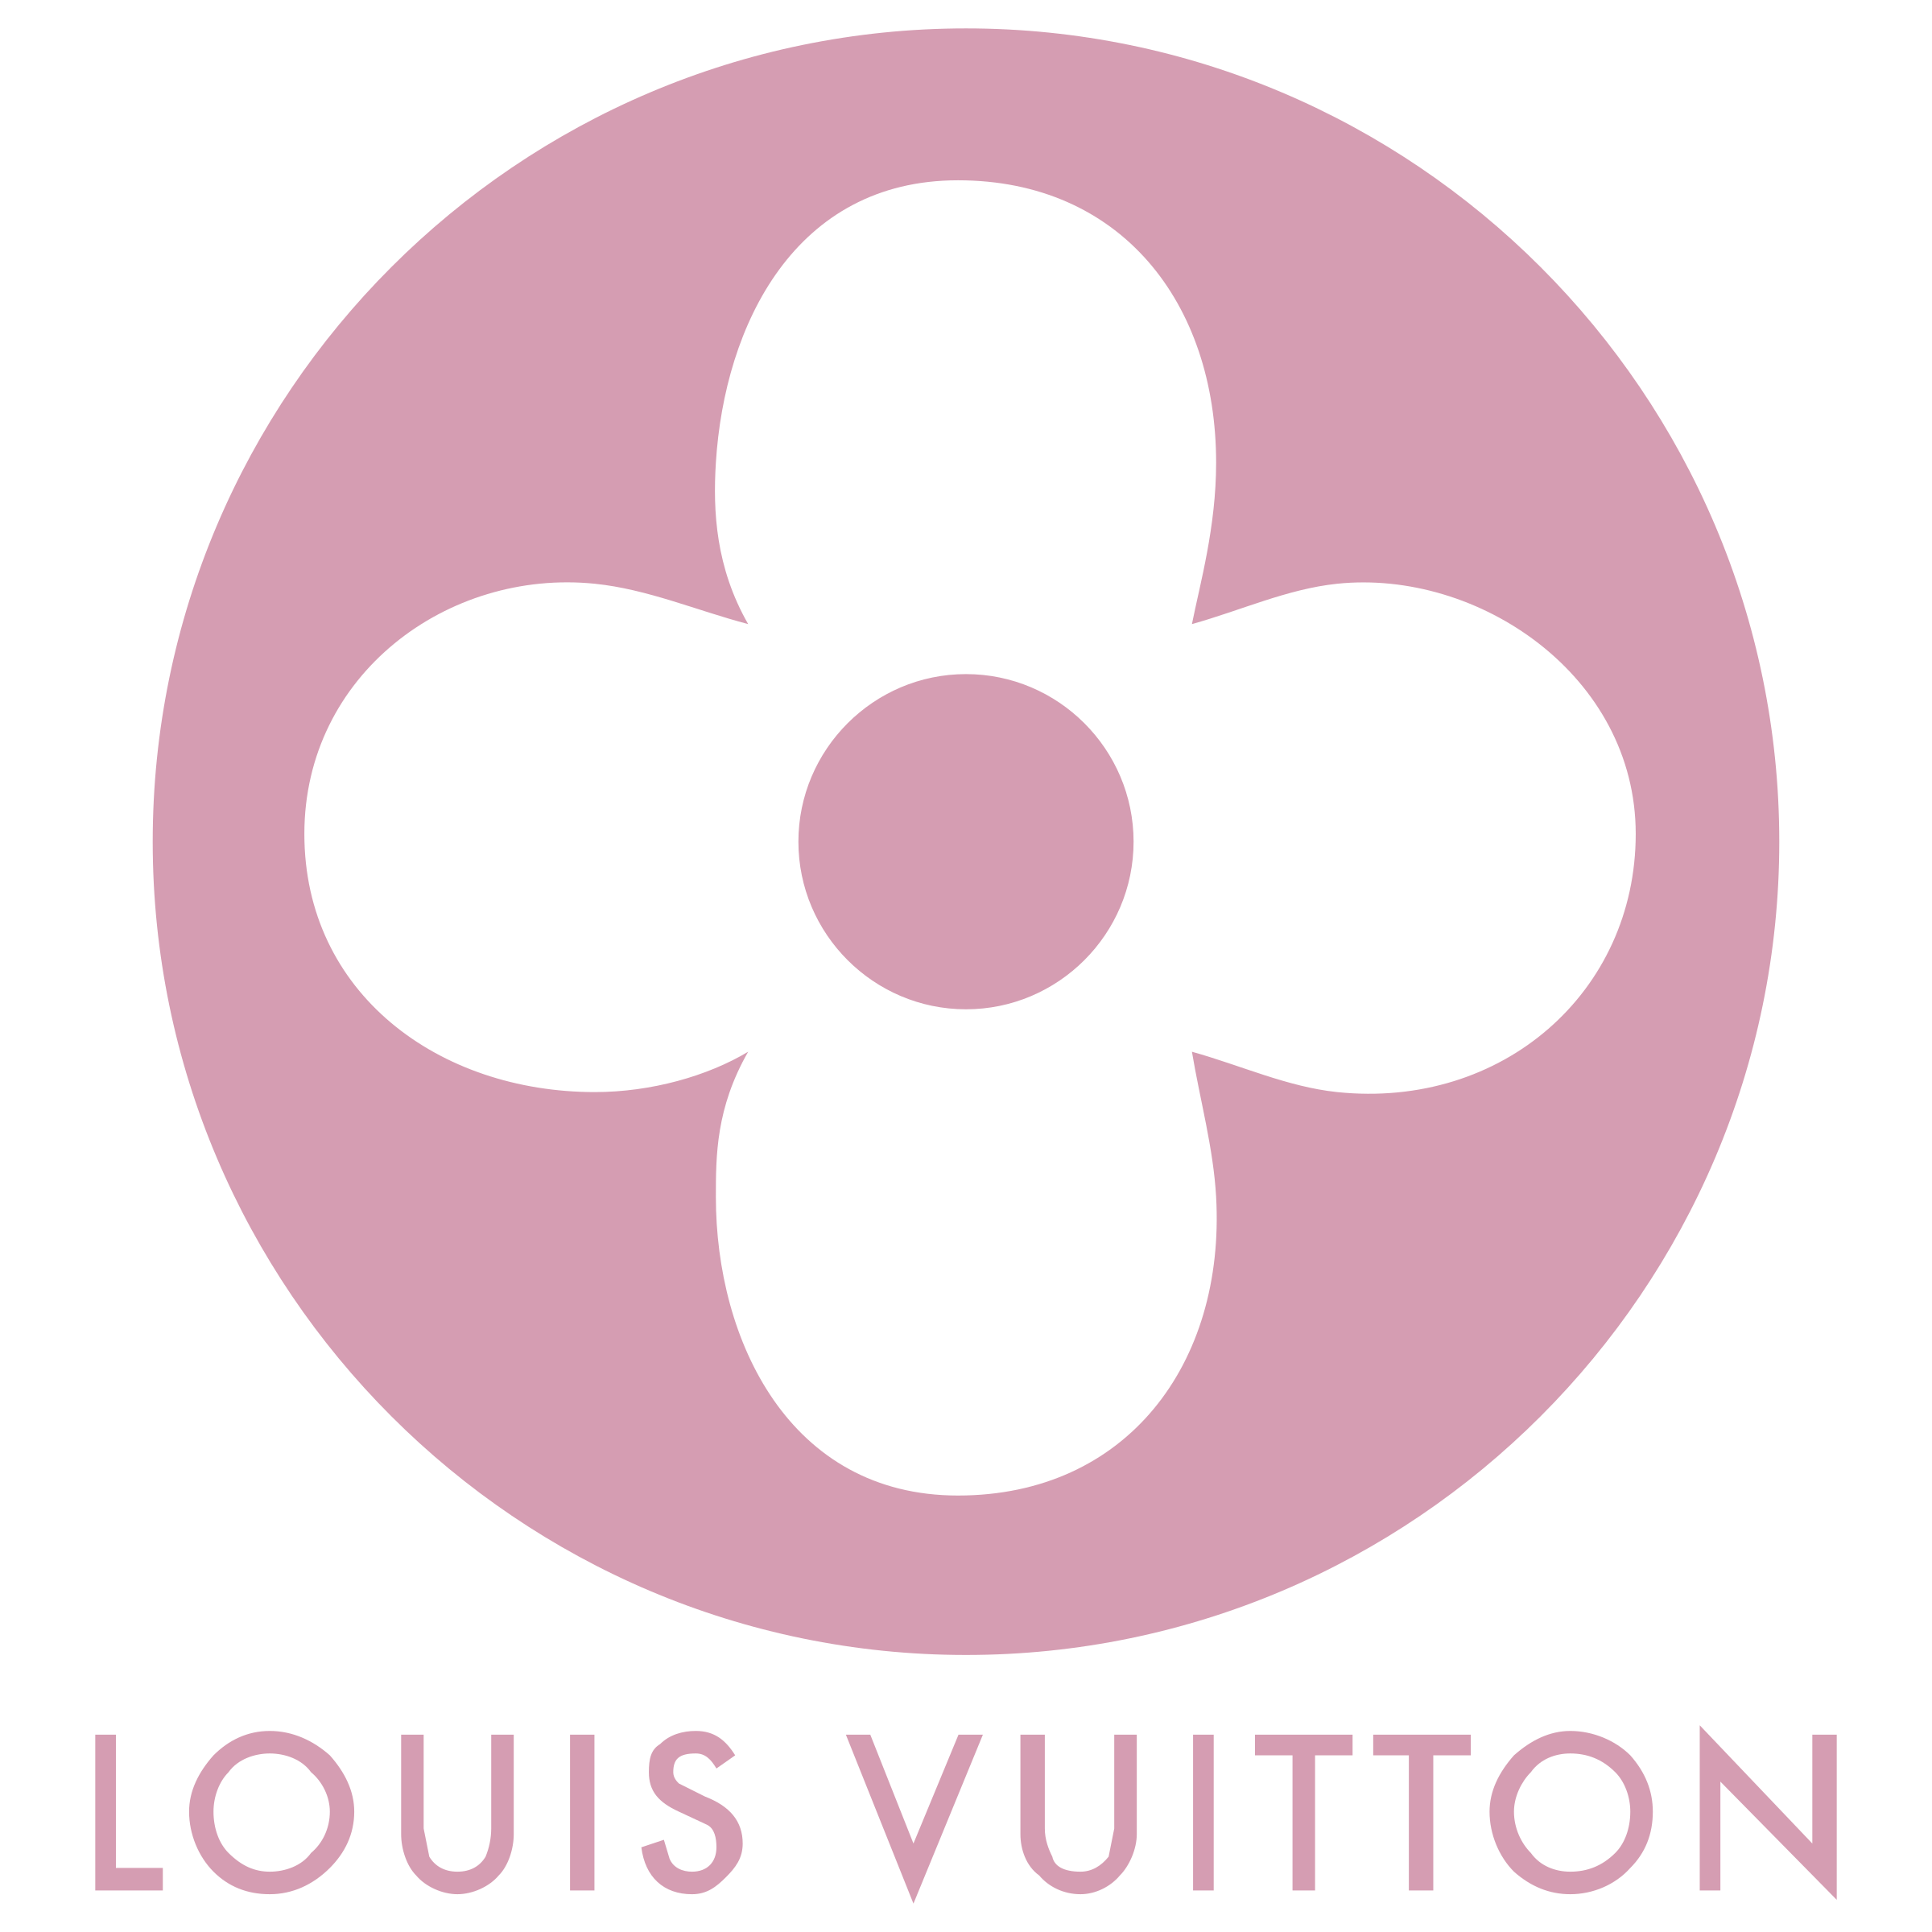 Louis Vuitton Transparent Logo - Louis Vuitton Logo PNG Transparent & SVG Vector